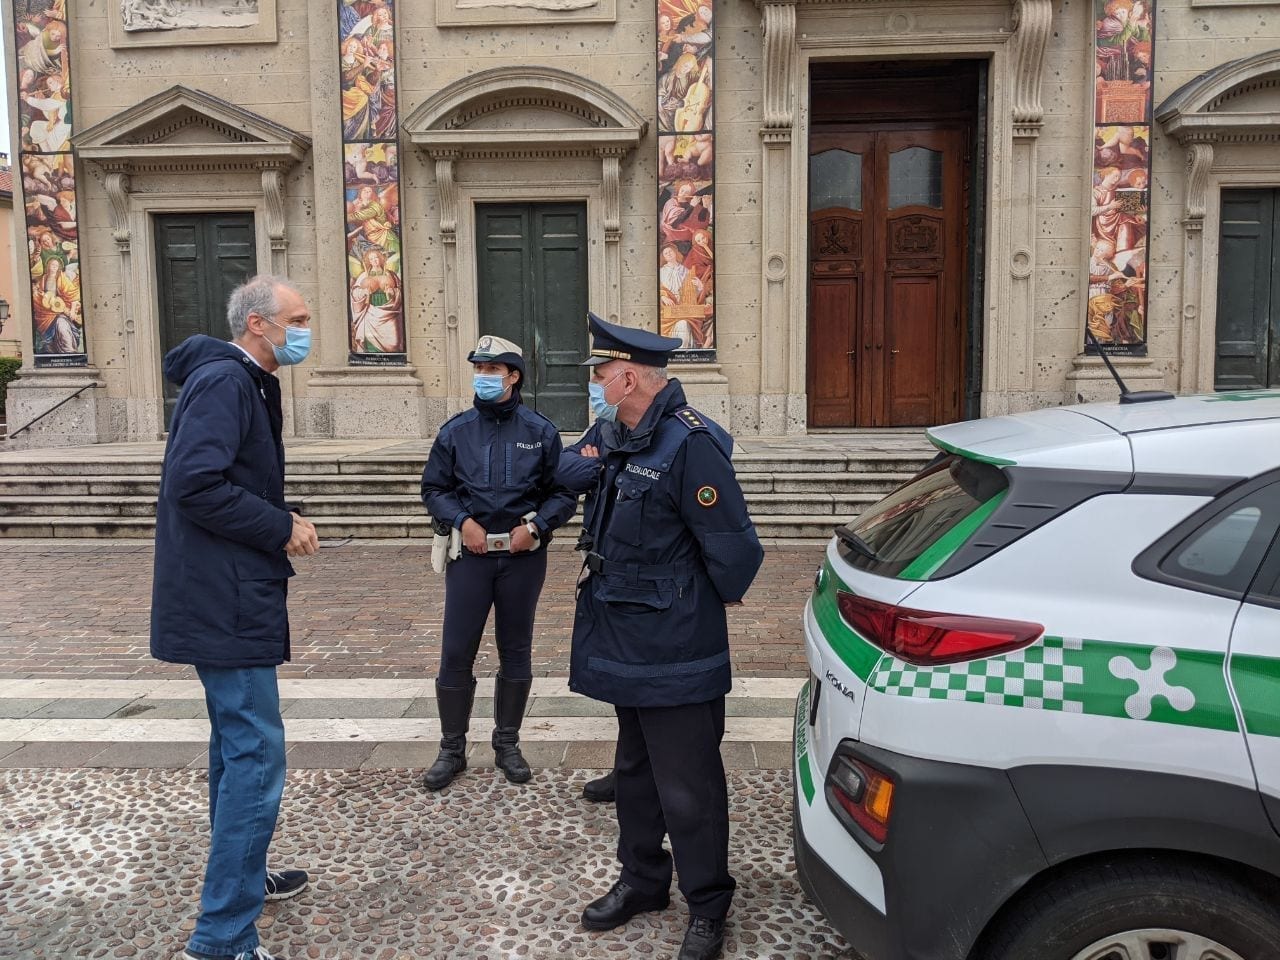 Ieri a Saronno: 40 assembrati e multati. Politica e urbanistica: parla l’ex sindaco. Allarme gas in un condominio